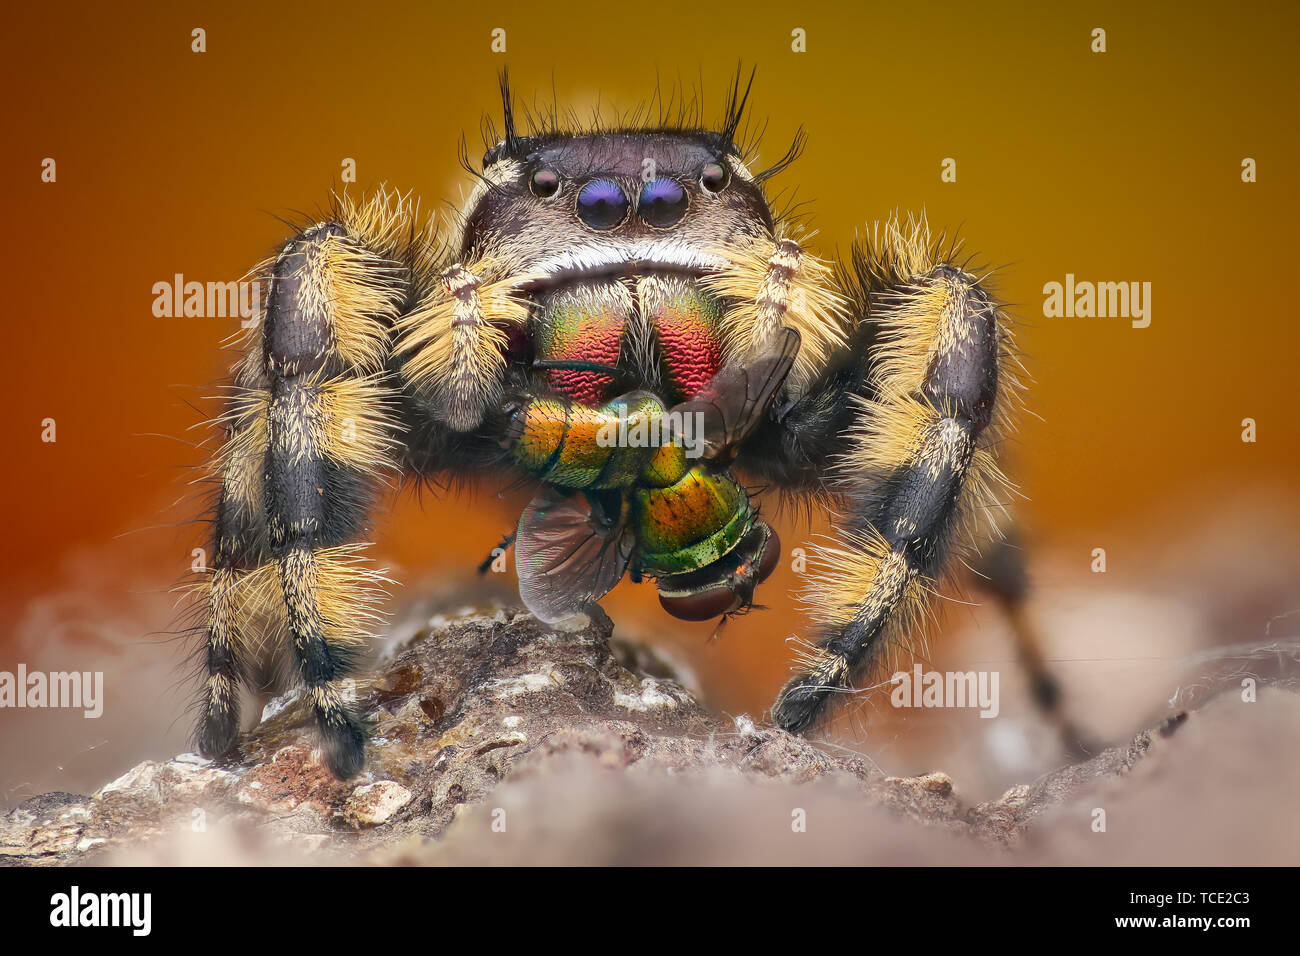 Portrait of a jumping spider (phiddipus otiosus), Indonesia Stock Photo